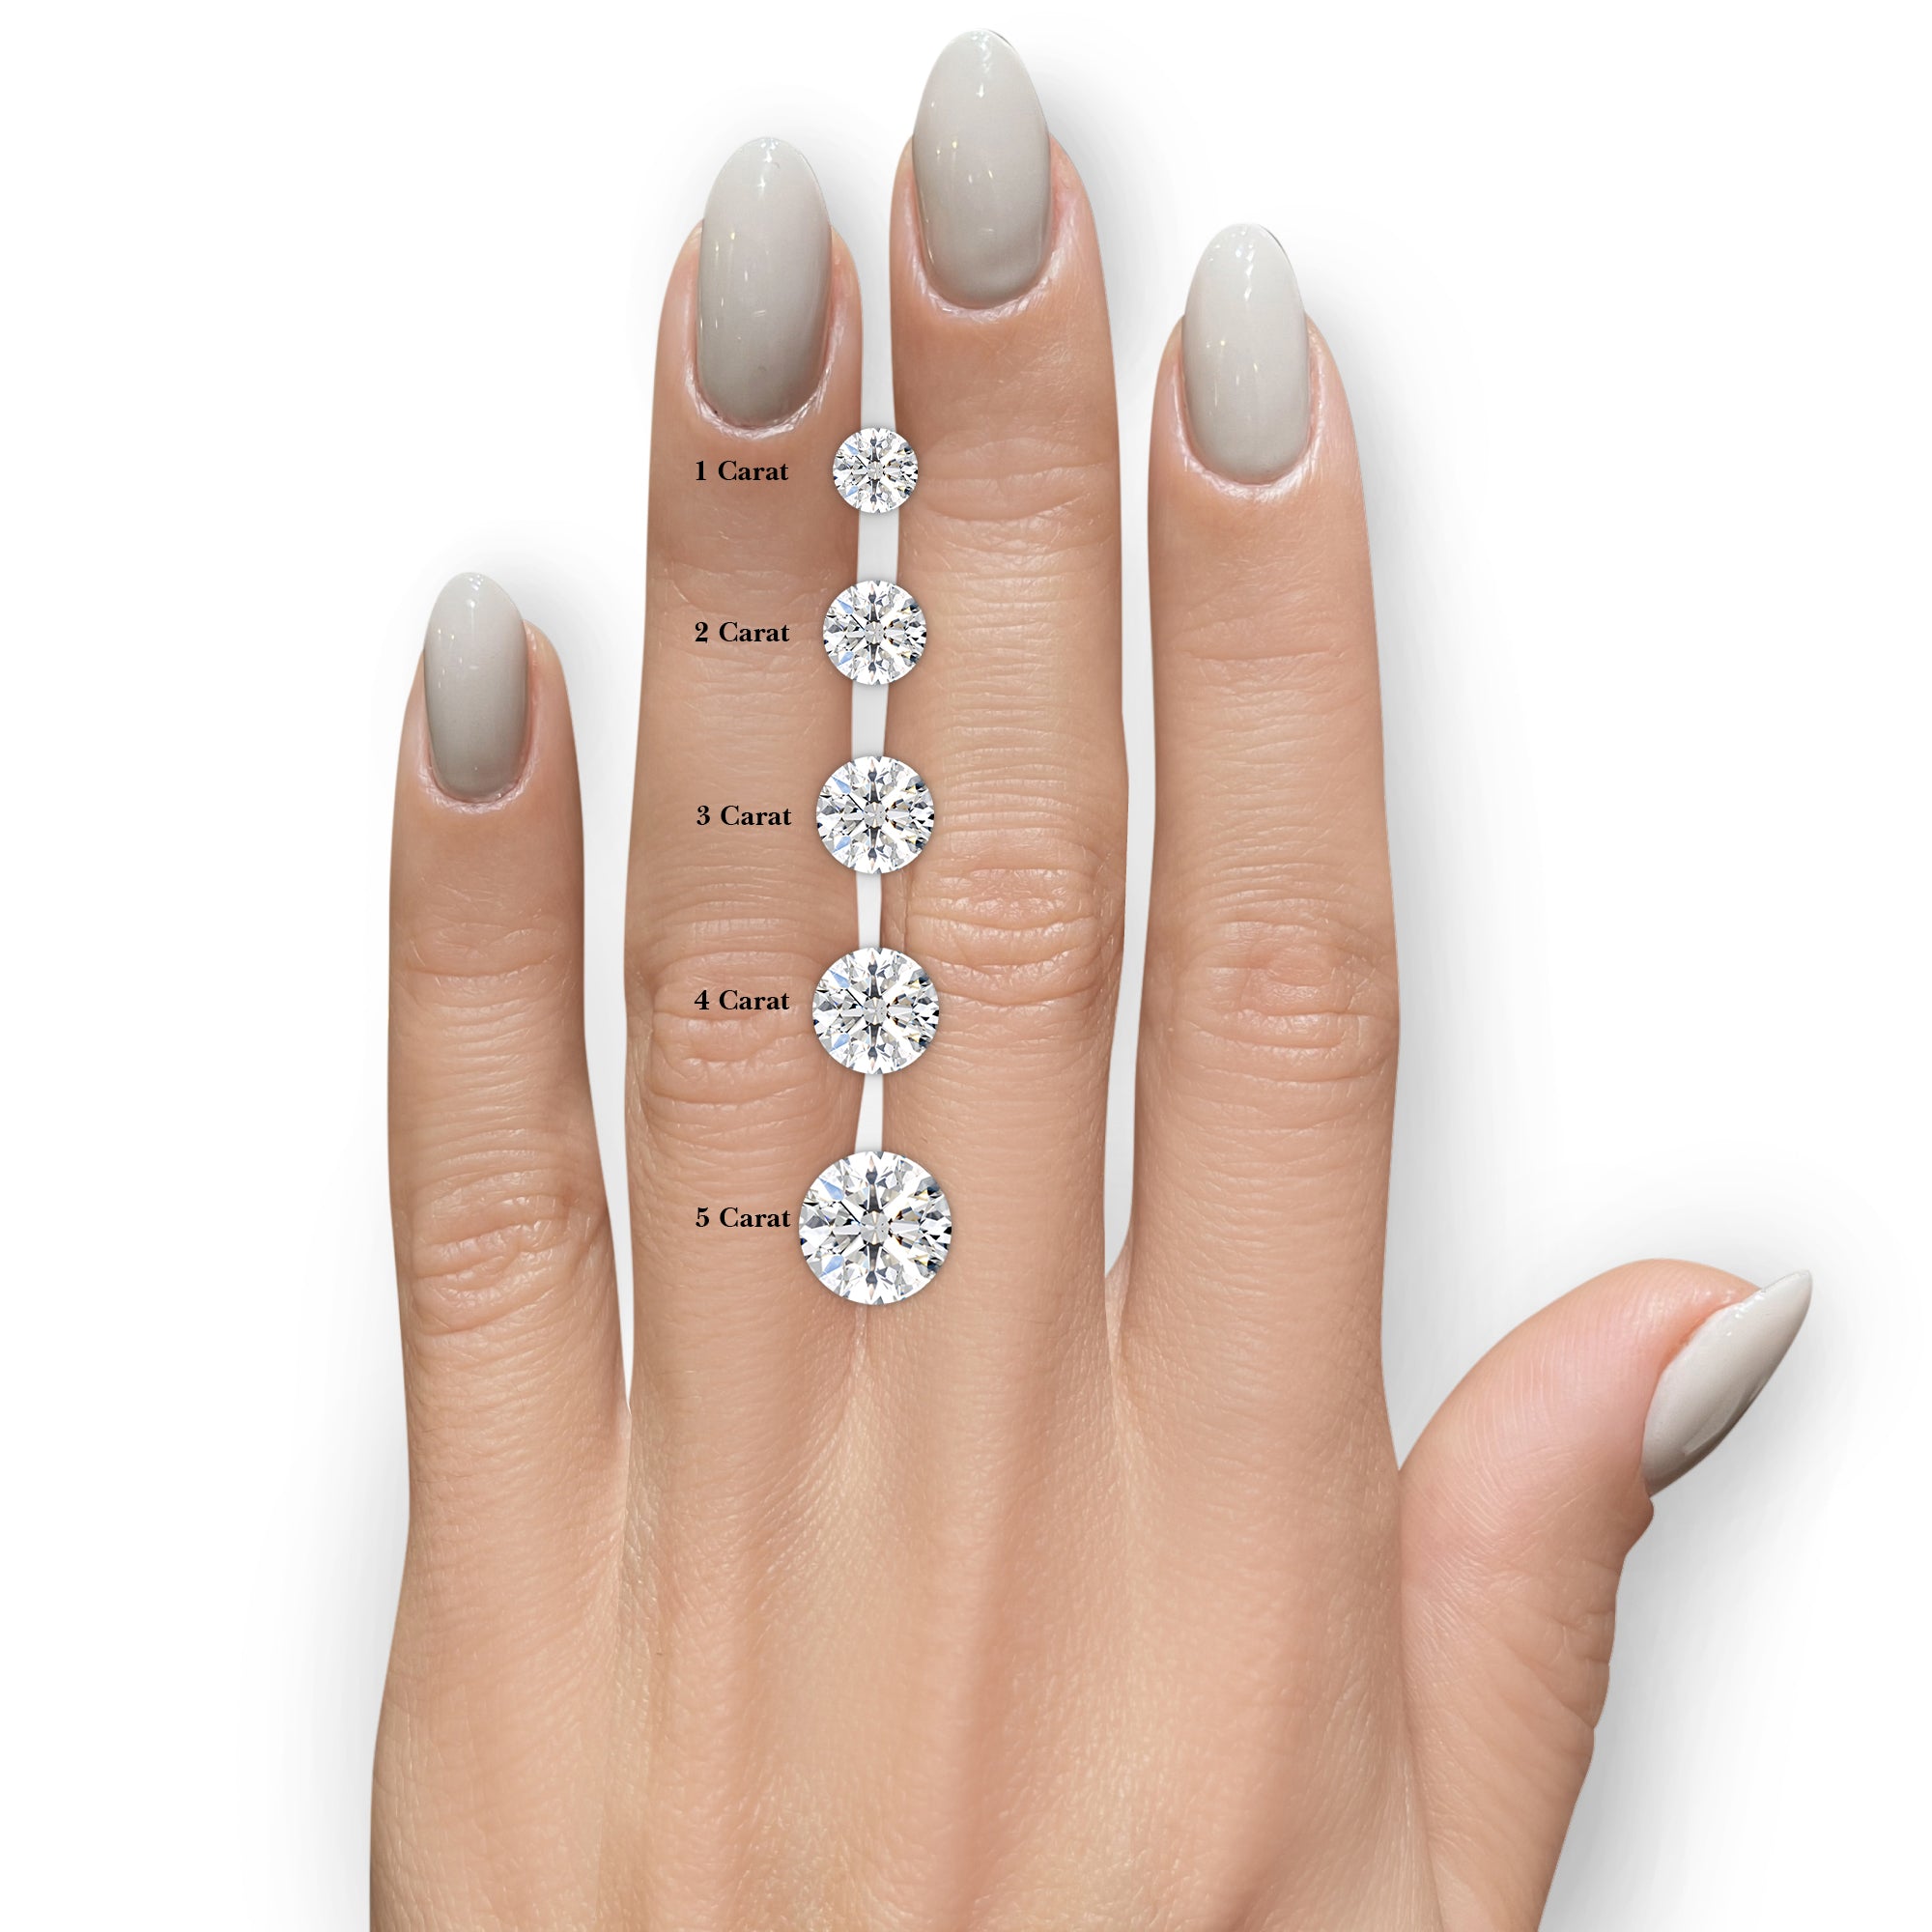 Diana Lab Grown Diamond Ring -14K White Gold